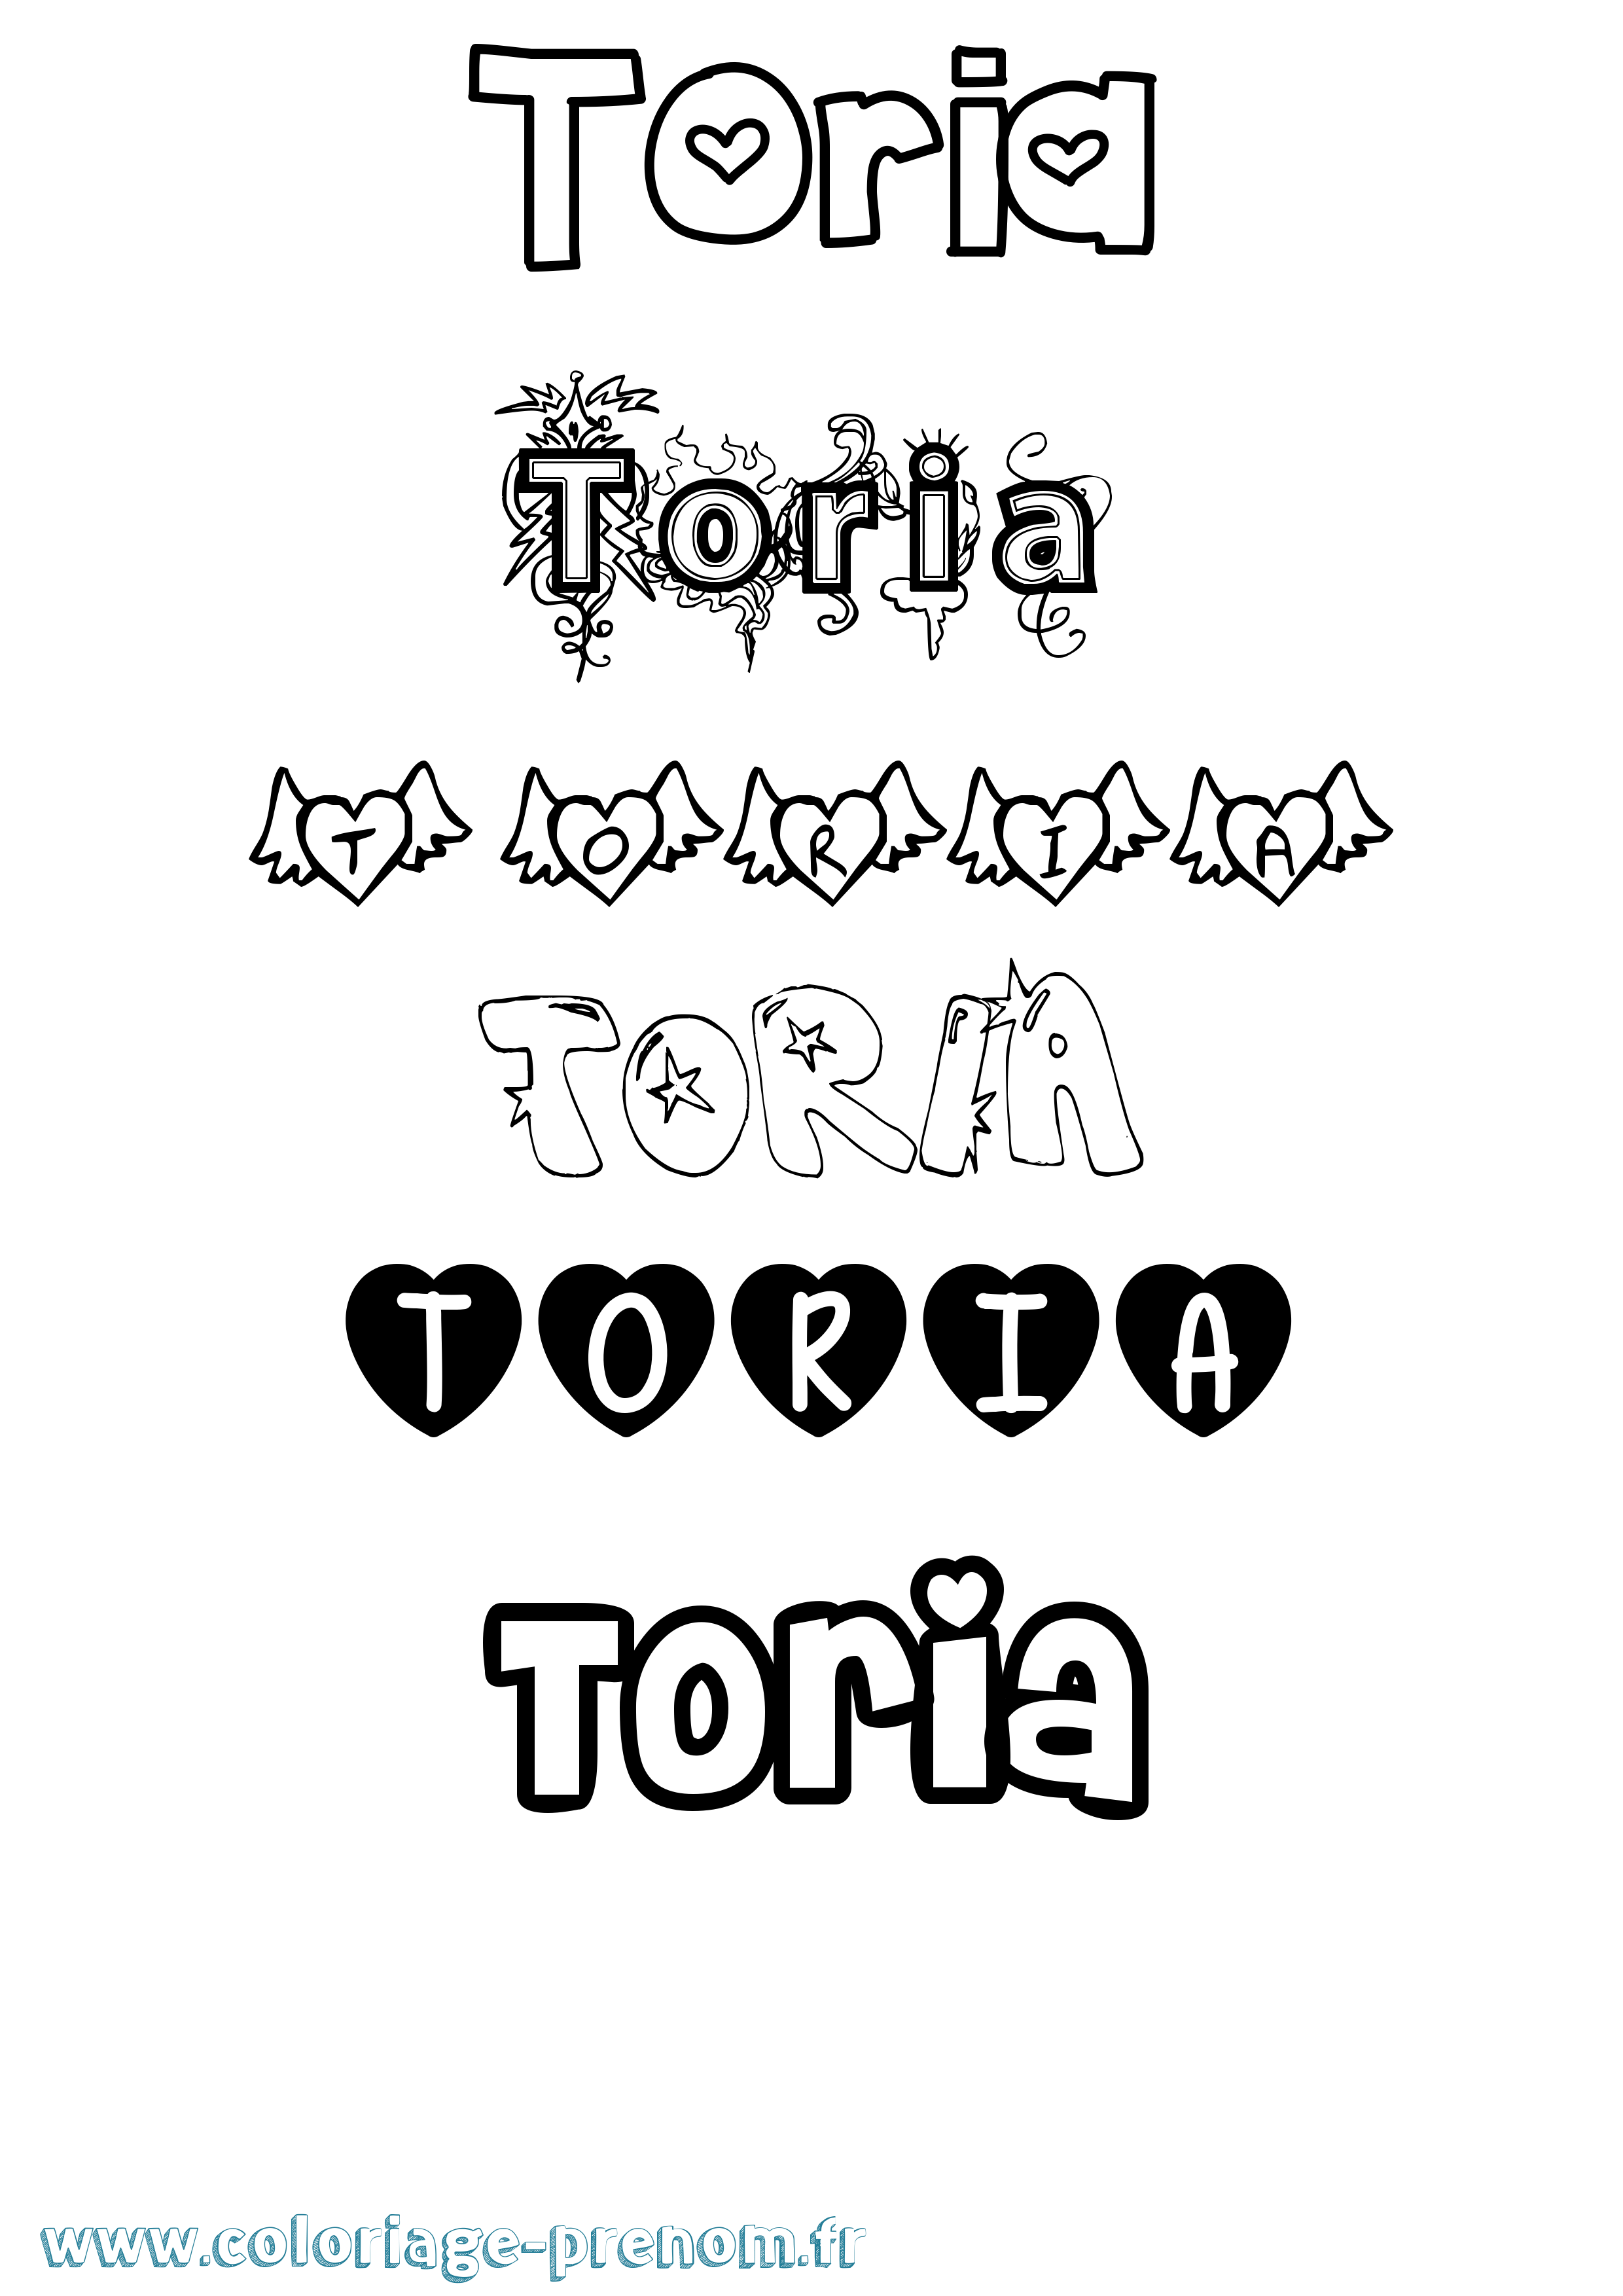 Coloriage prénom Toria Girly